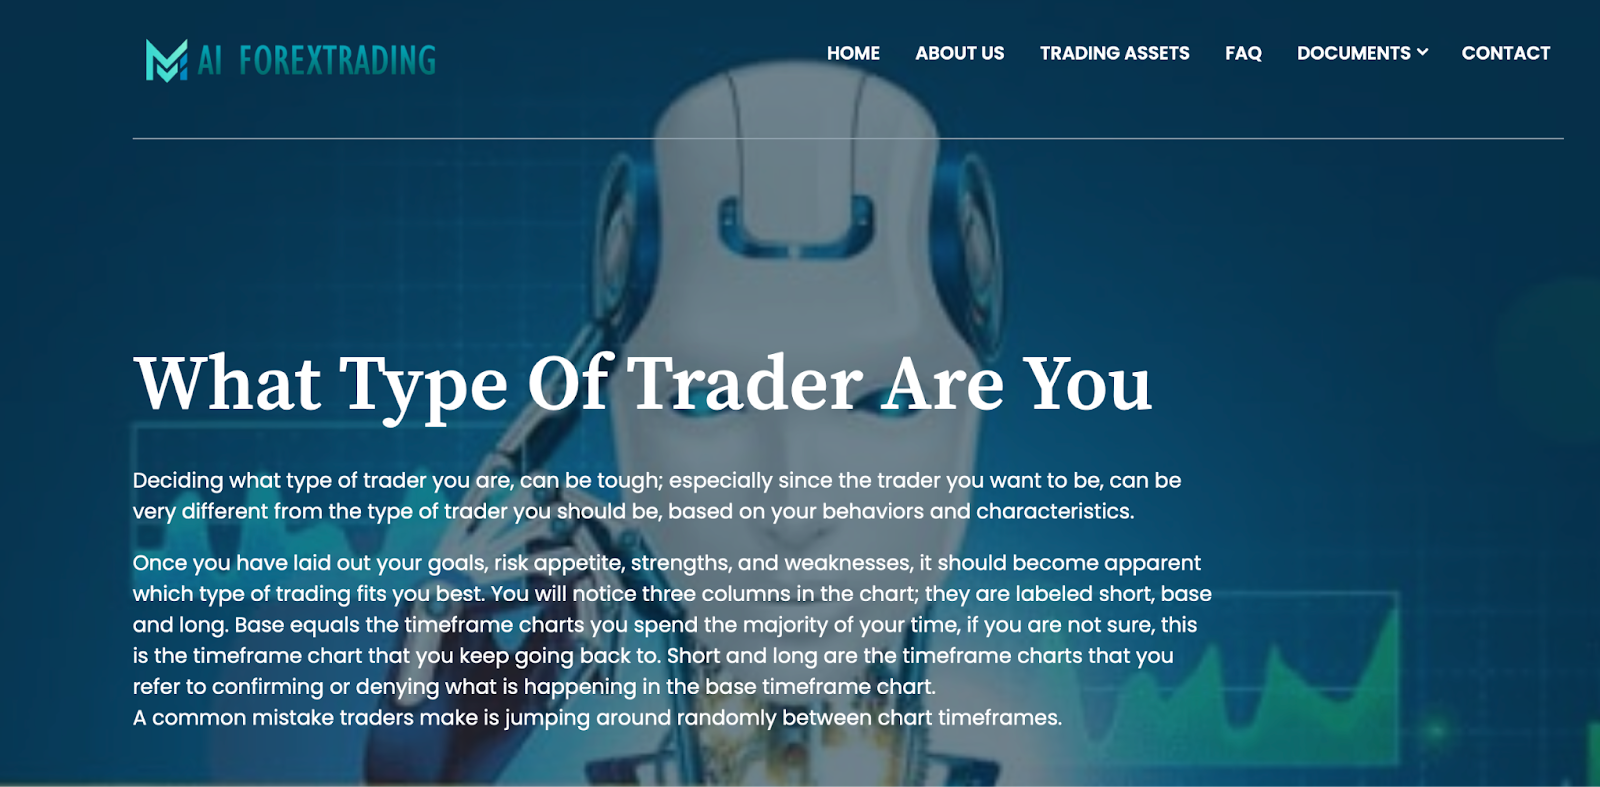 AI ForexTrading — инвестиционная платформа со встроенной автоматизированной торговой системой.